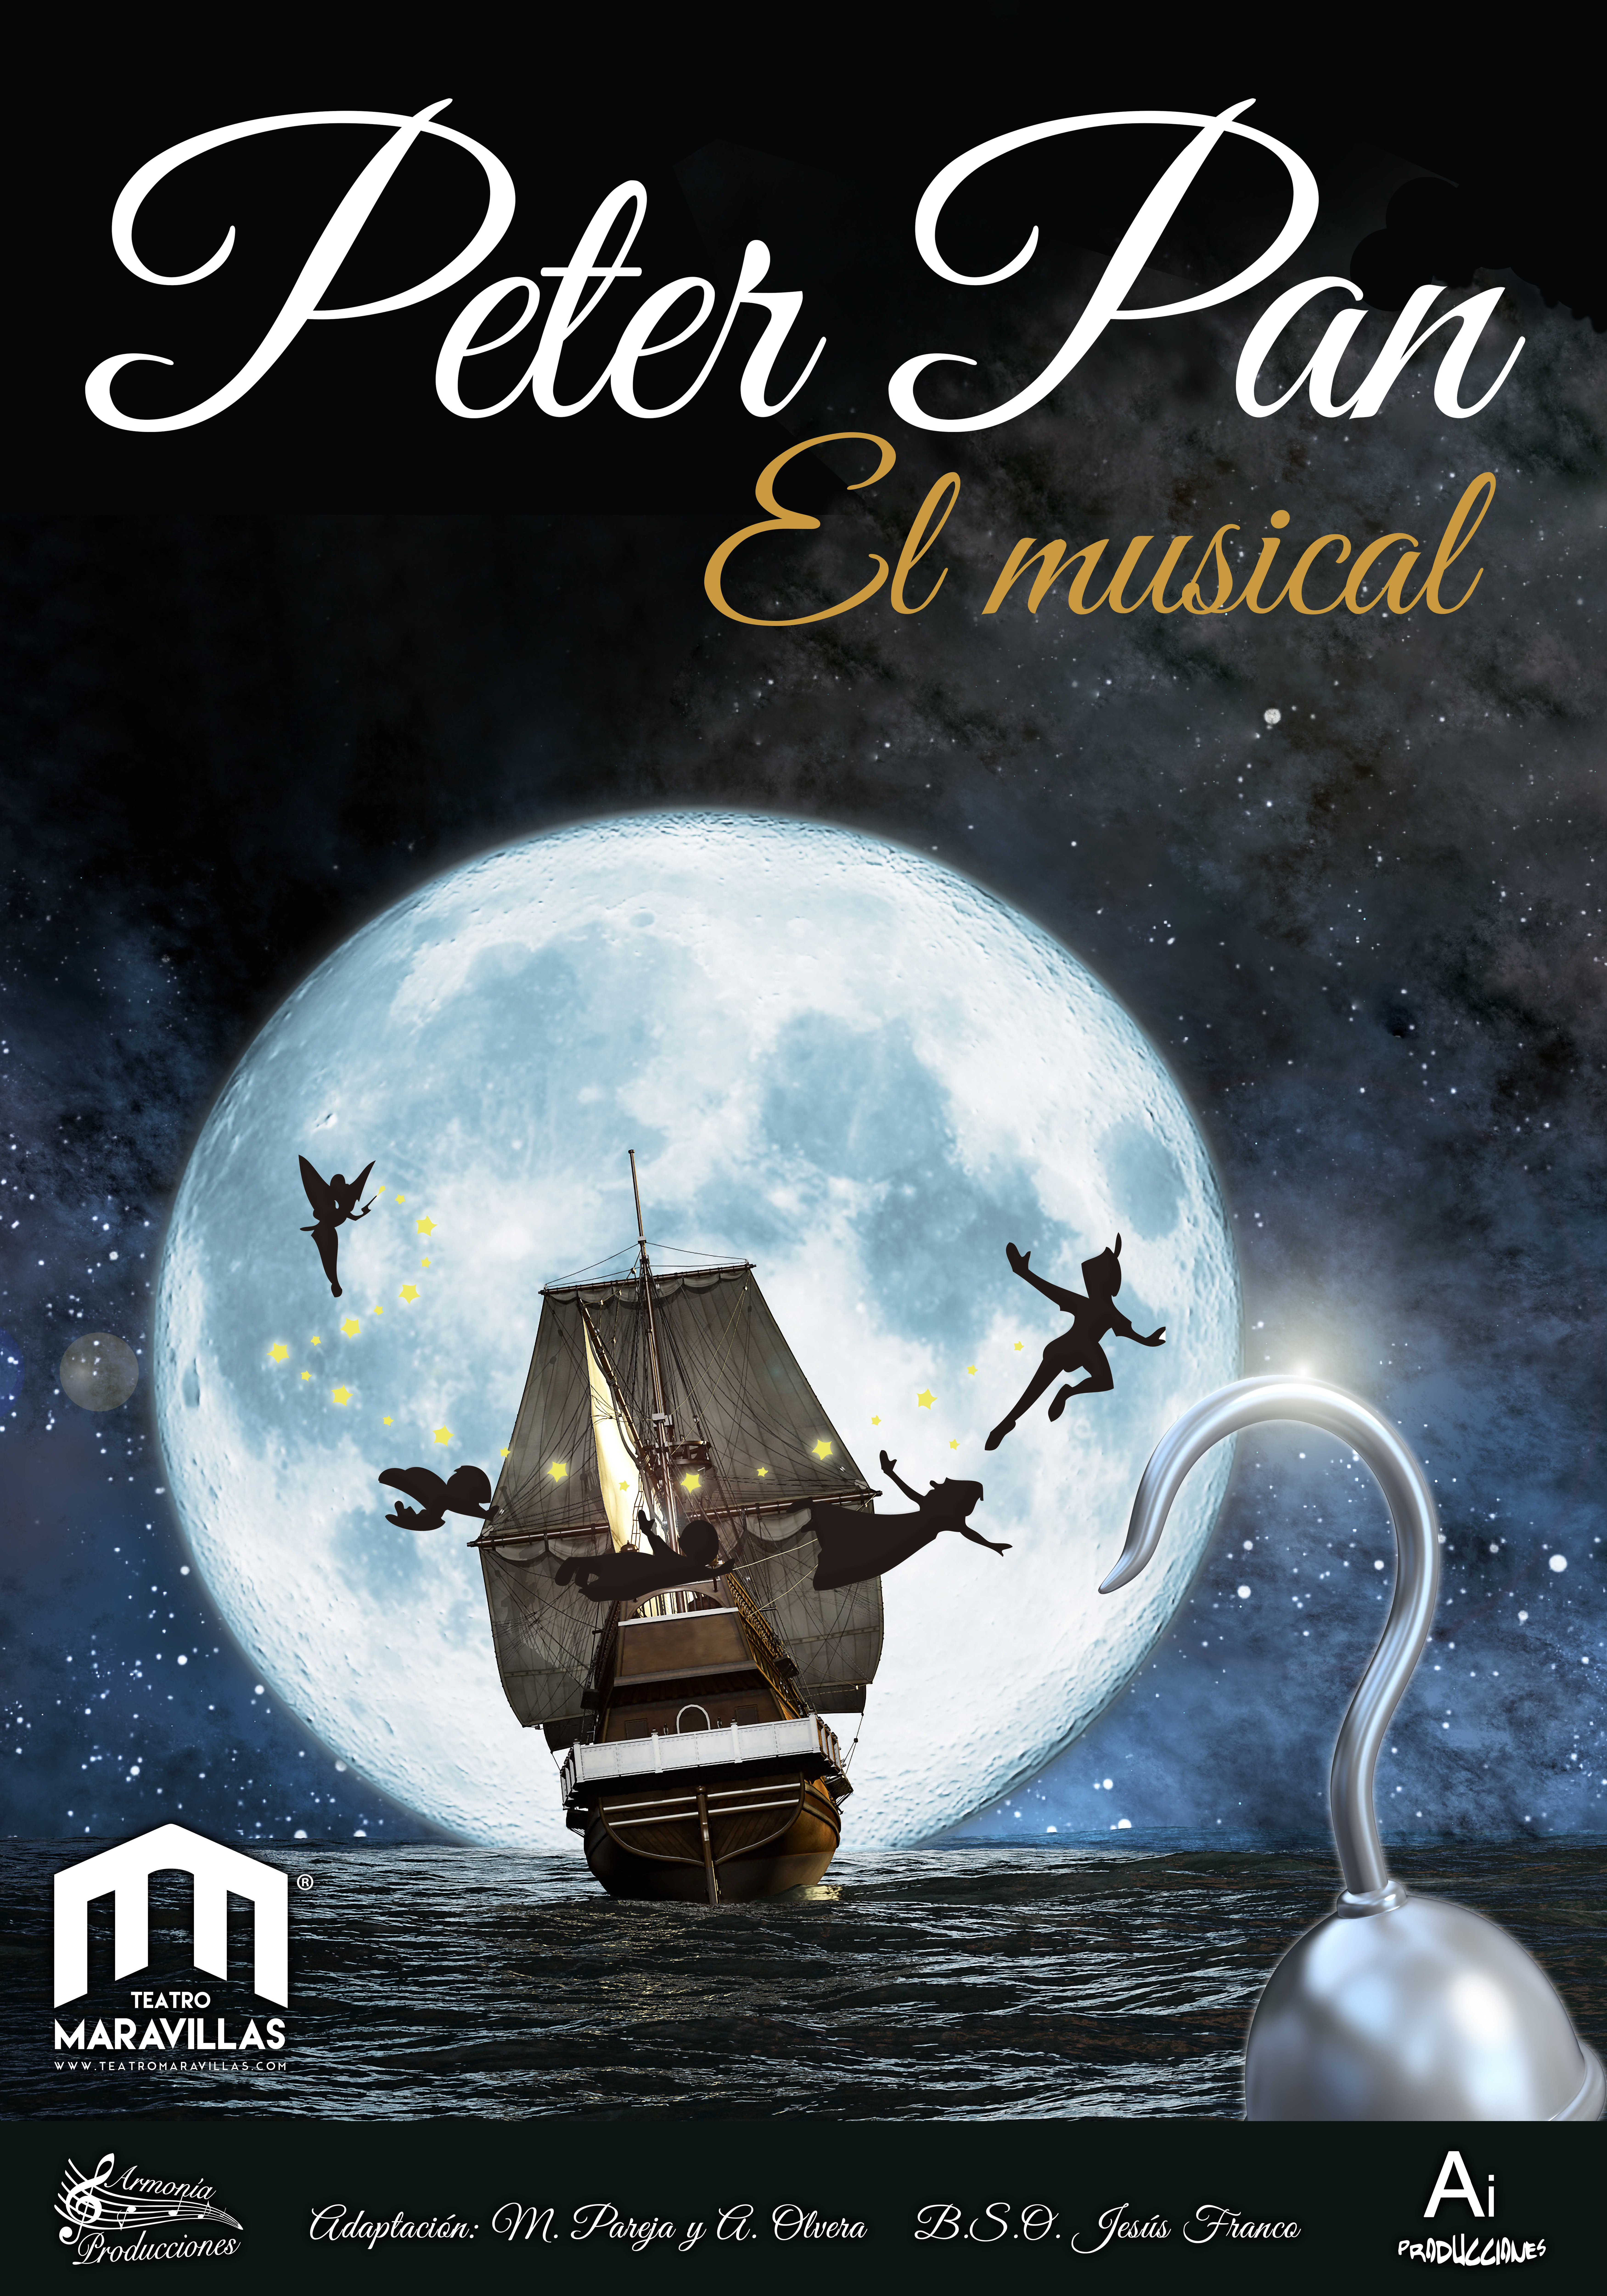 Peter Pan El musical